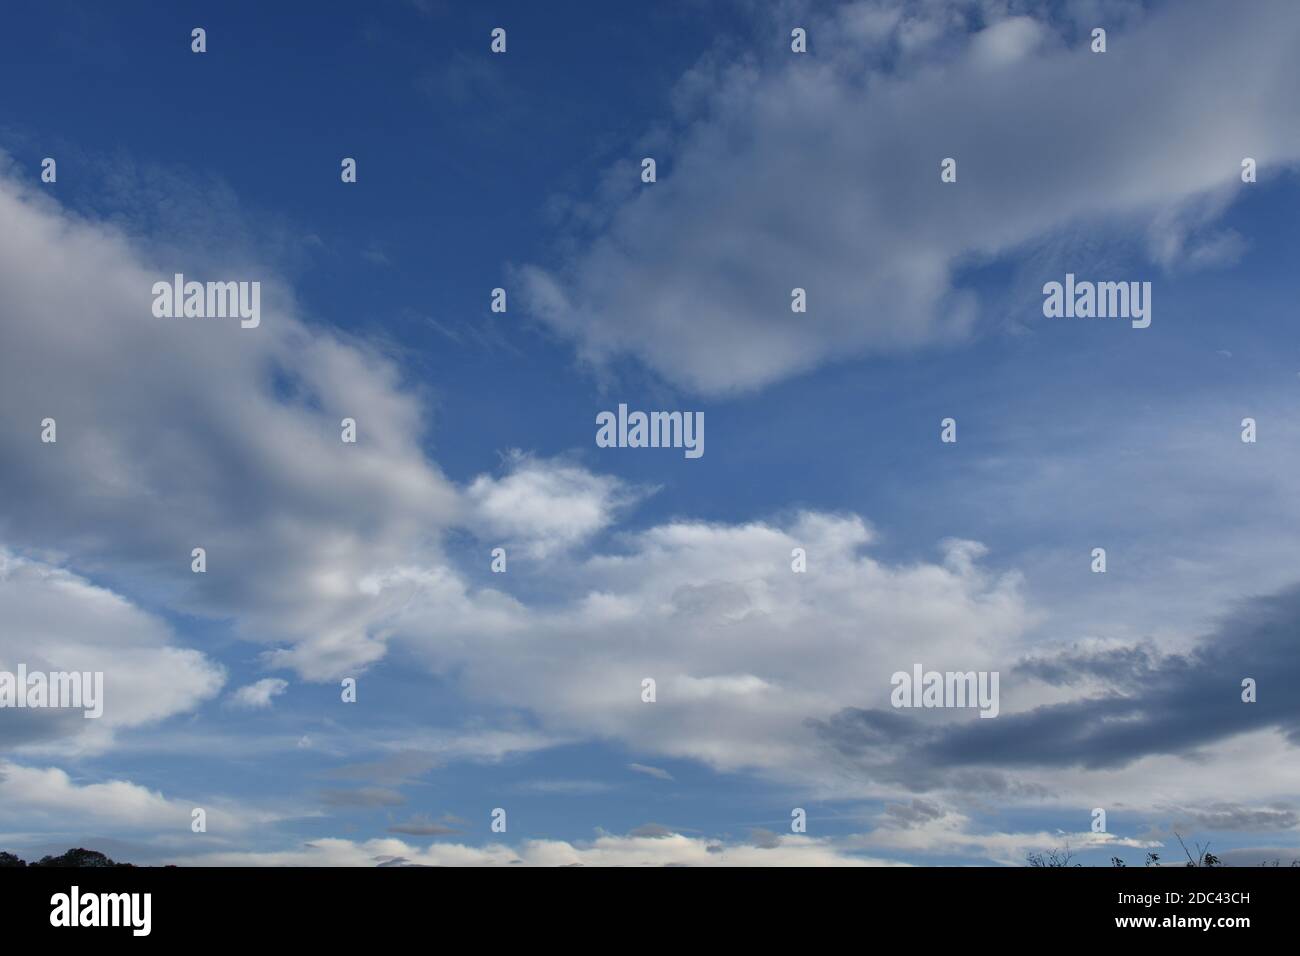 Wolke, Wolken, Himmel, Sommer, Jahreszeit, Himmel, Blau, weiß, Wetter, Struktur, Unwetter, Sturm, Wetterwandel, Veränderung, bedeckt, wolkig, bewölkt, Stock Photo